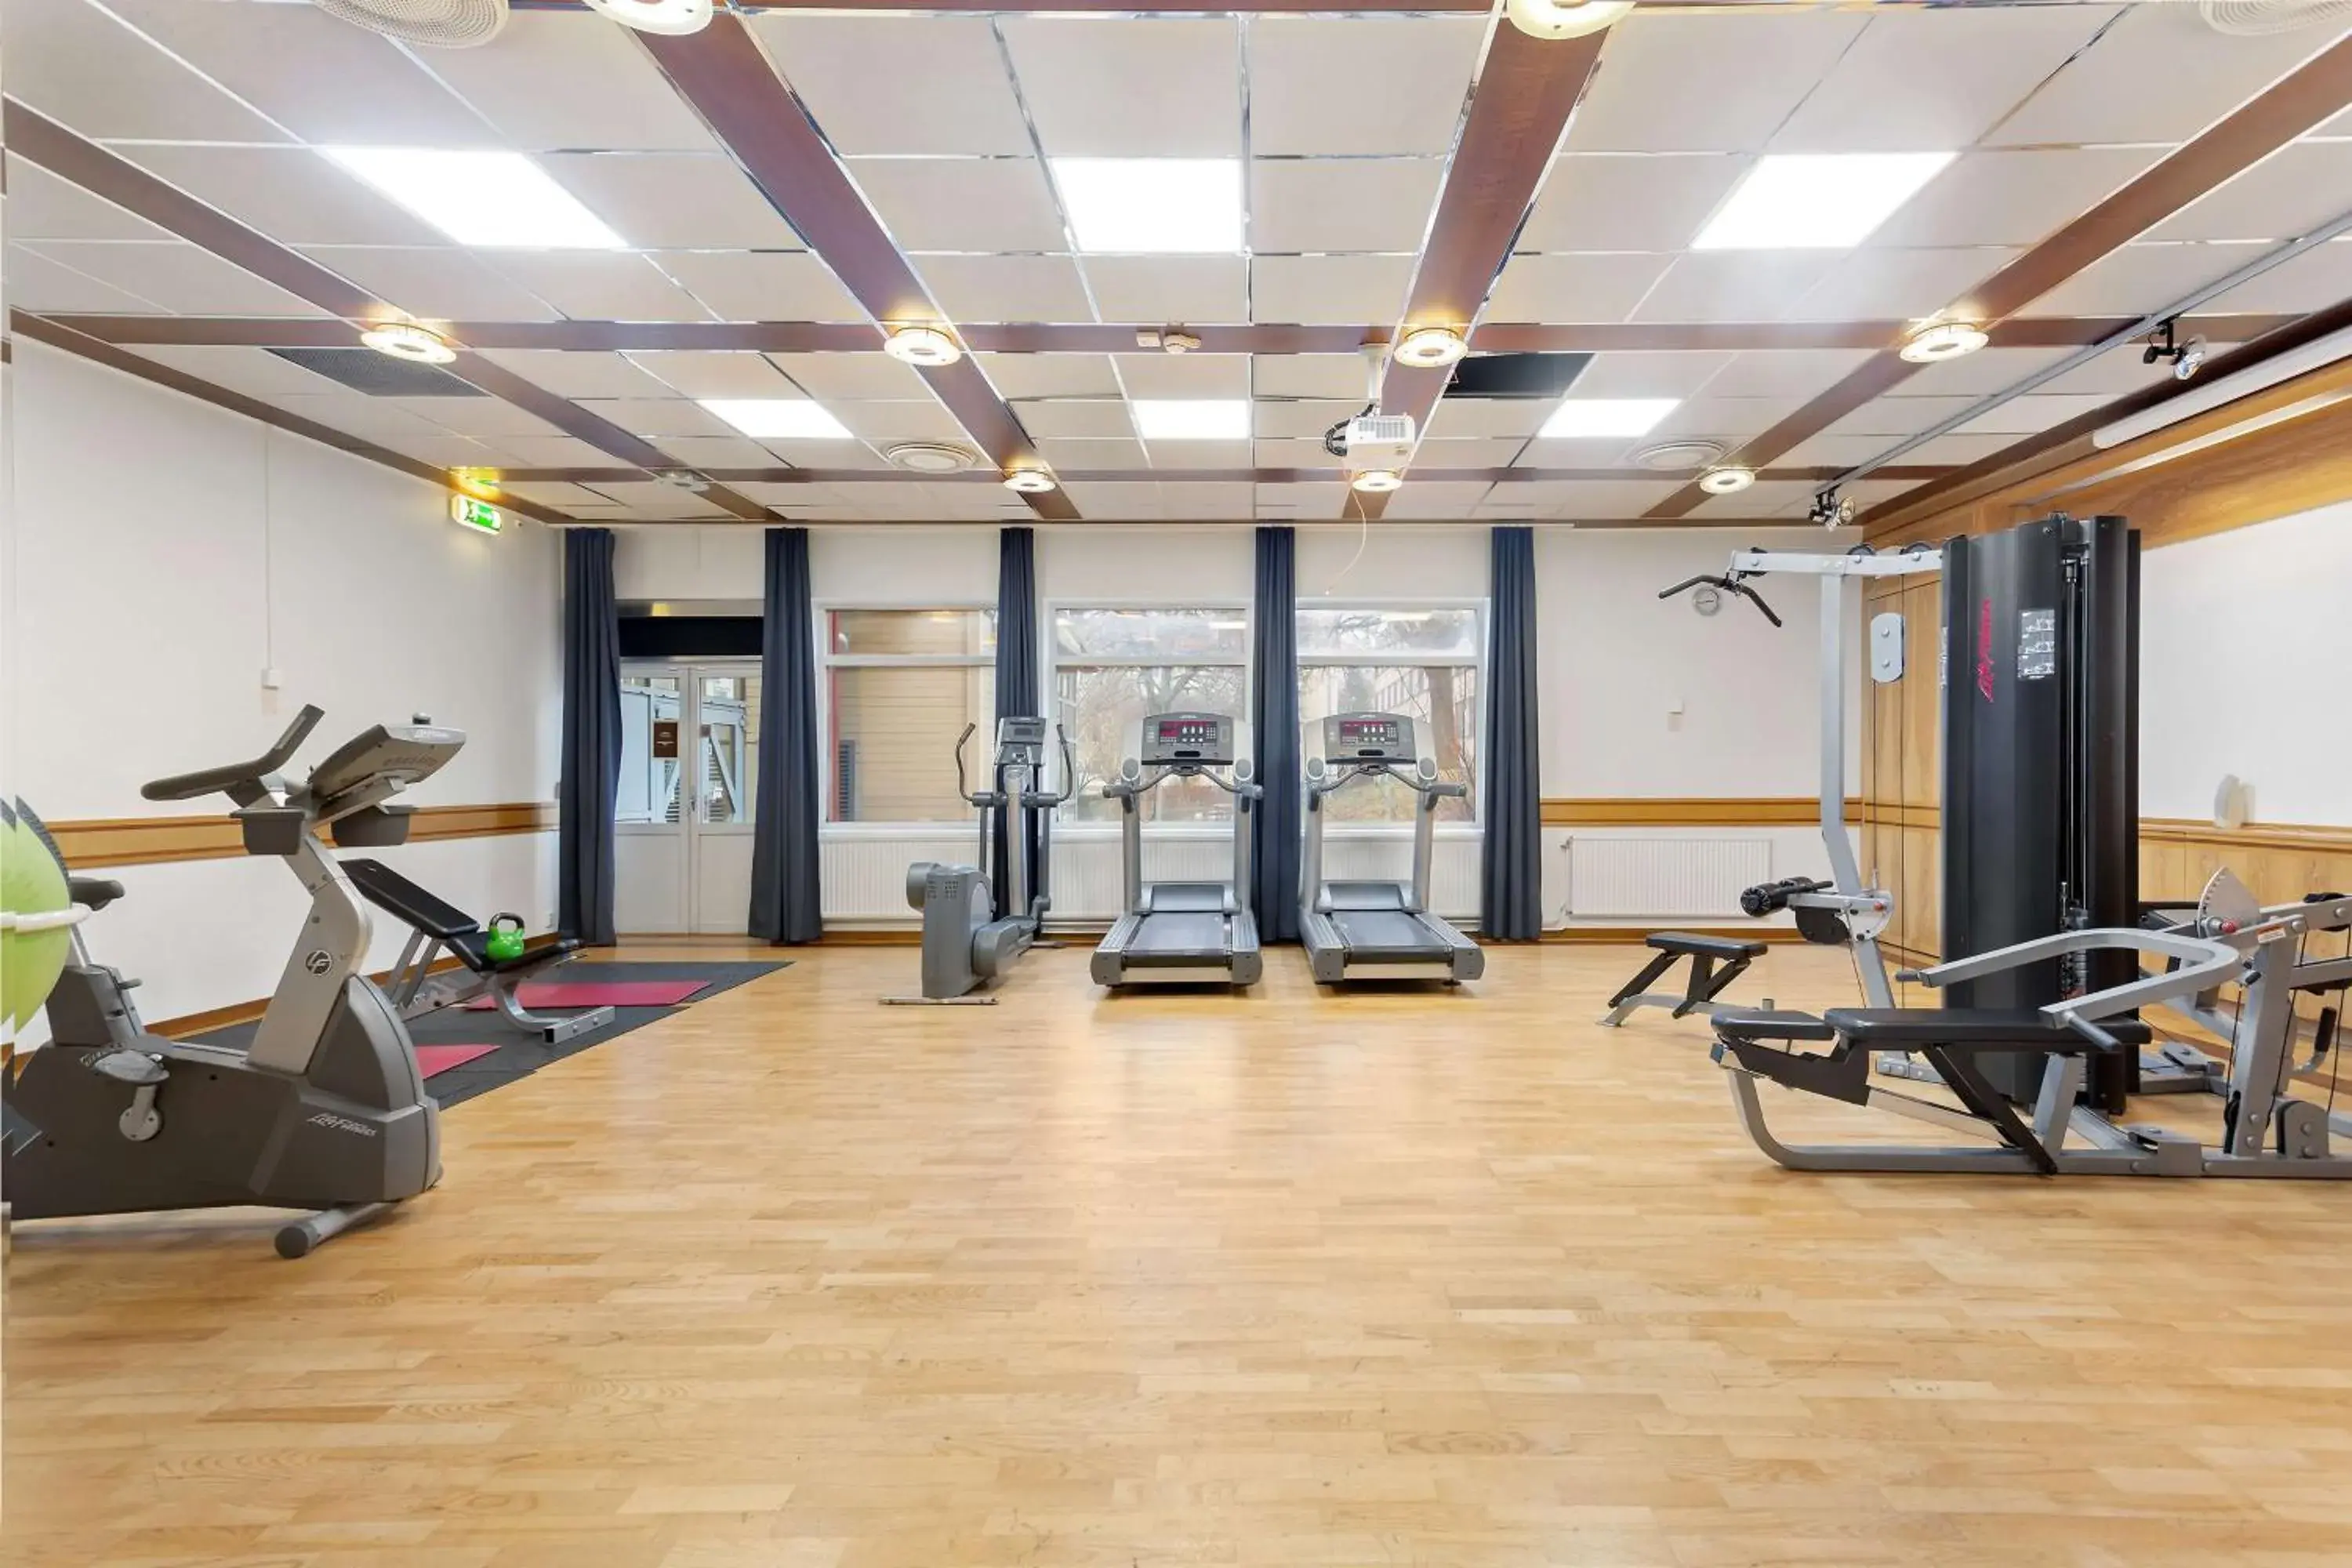 Fitness centre/facilities, Fitness Center/Facilities in Scandic Skogshöjd